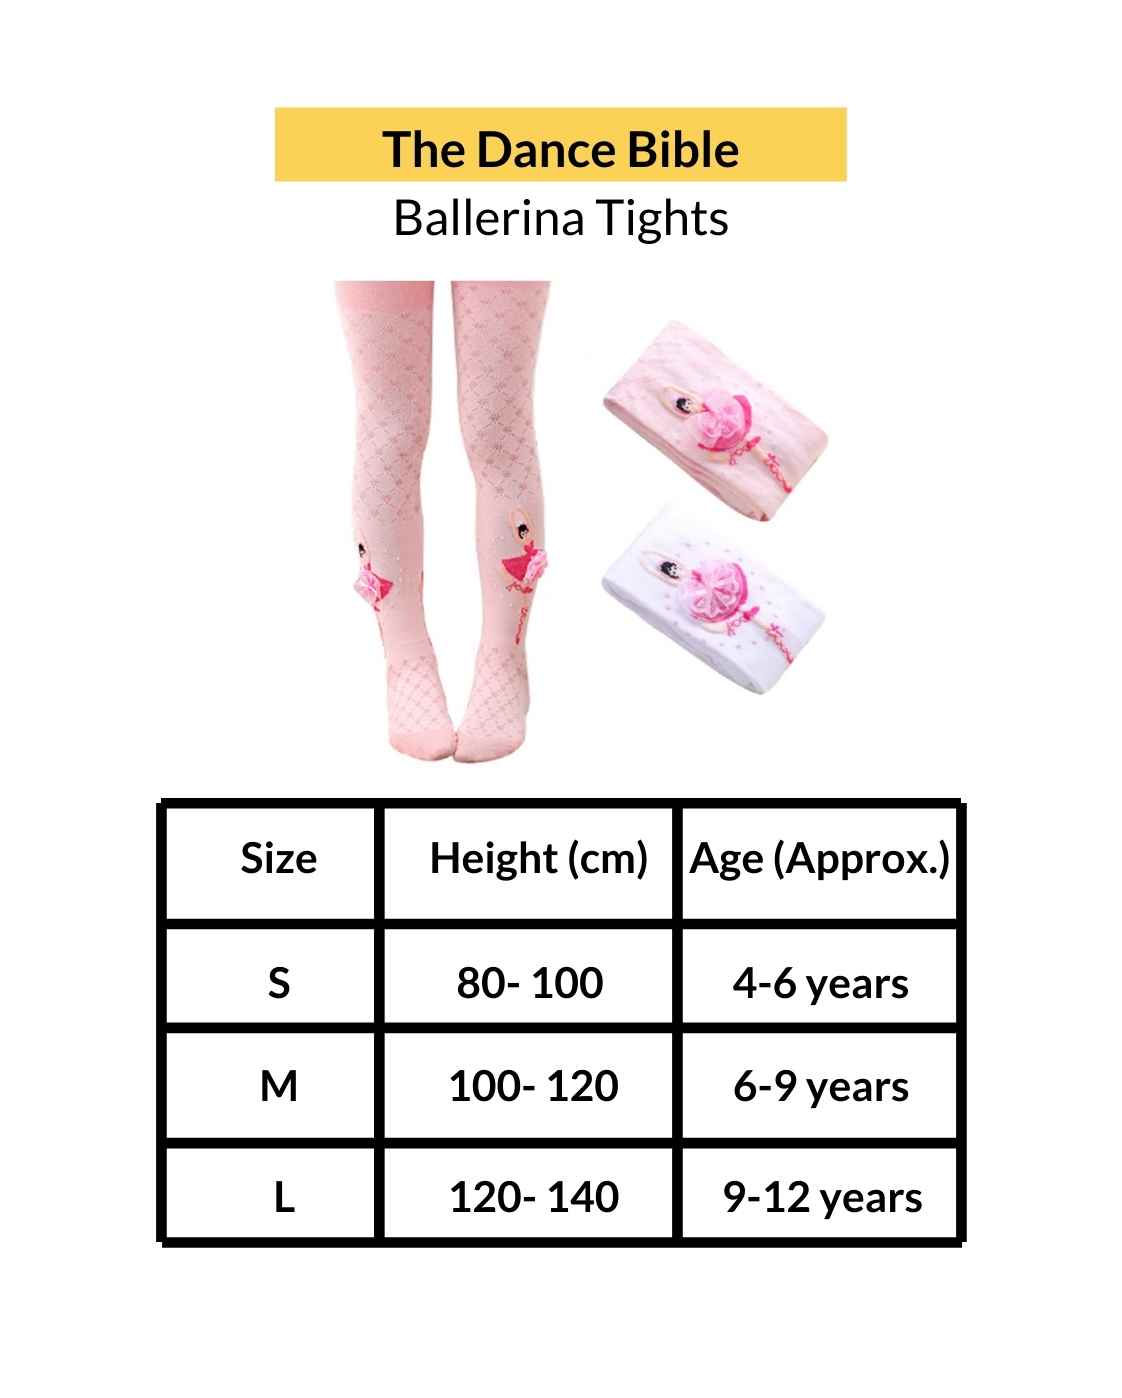 https://thedancebible.com/cdn/shop/files/kids-ballerina-tights-sizechart.jpg?v=17068558513631133260